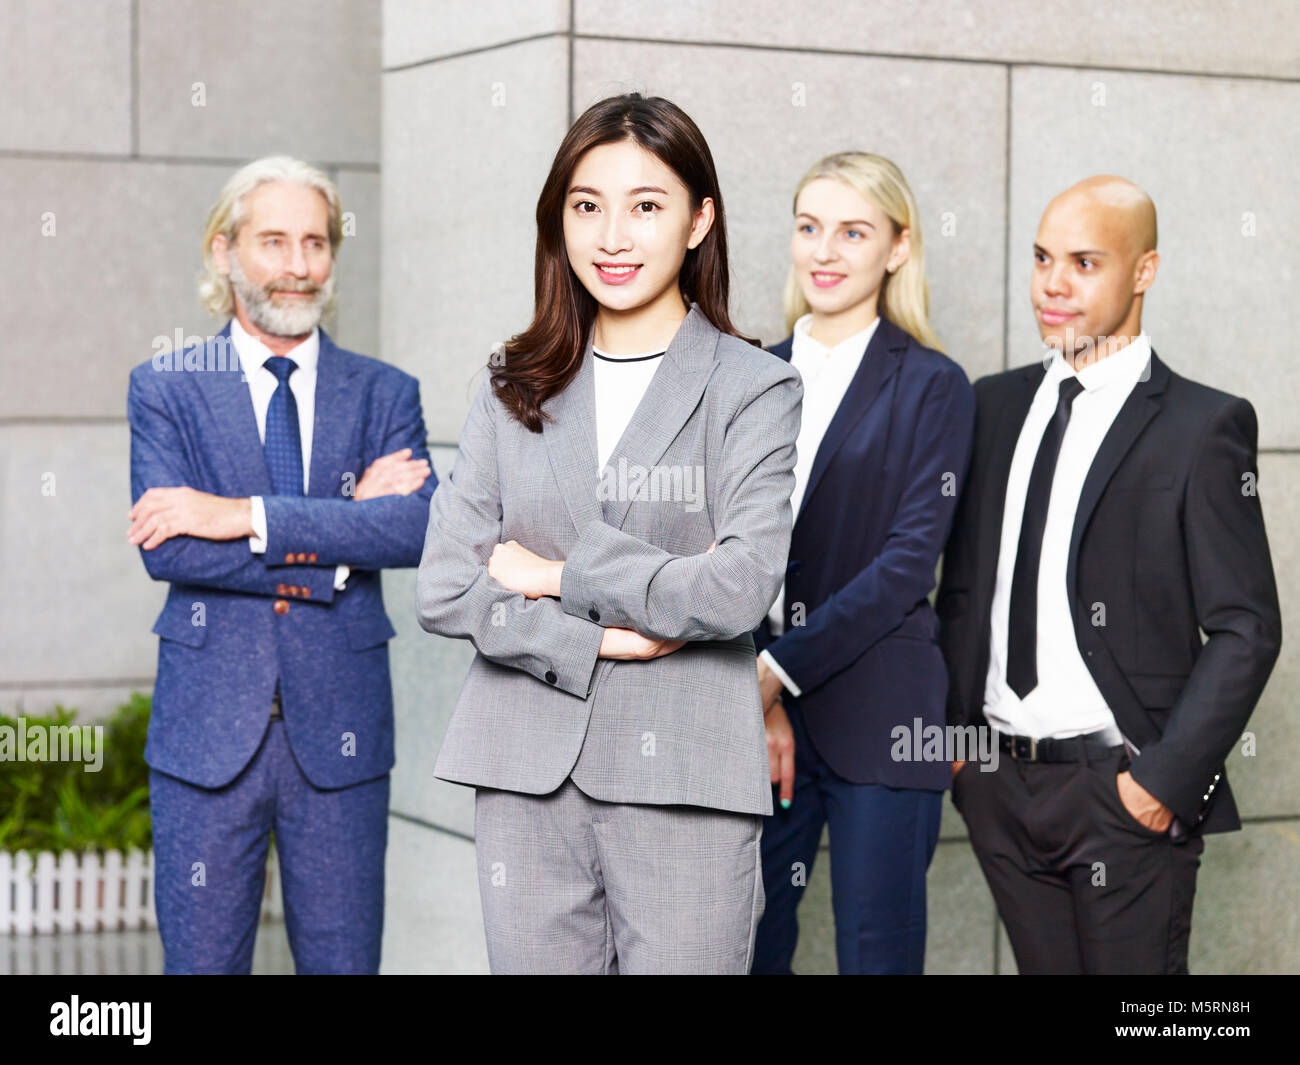 Porträt von einem Team von multinationalen und multiethnischen corporate business Menschen. Stockfoto